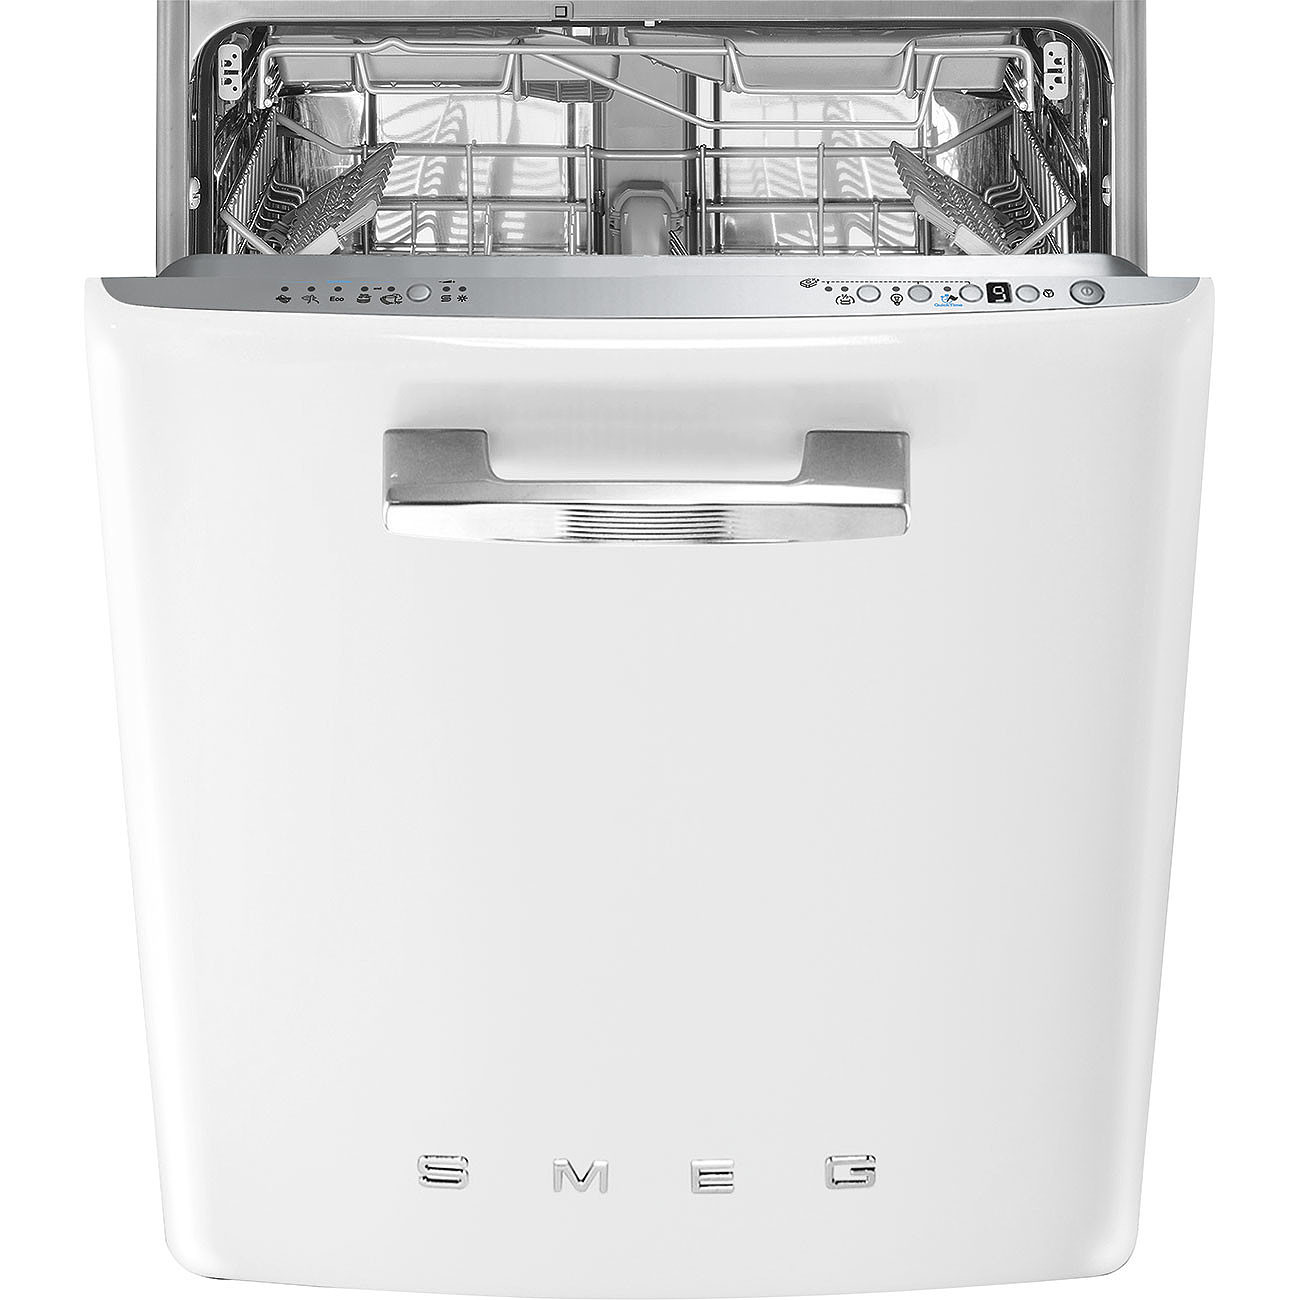 Посудомоечные машины встраиваемые фото. Посудомоечная машина Smeg st2fabwh. Посудомоечная машина Smeg stfabcr3. Посудомоечная машина Смег 60 см встраиваемая. Посудомоечная машина Smeg st331l.